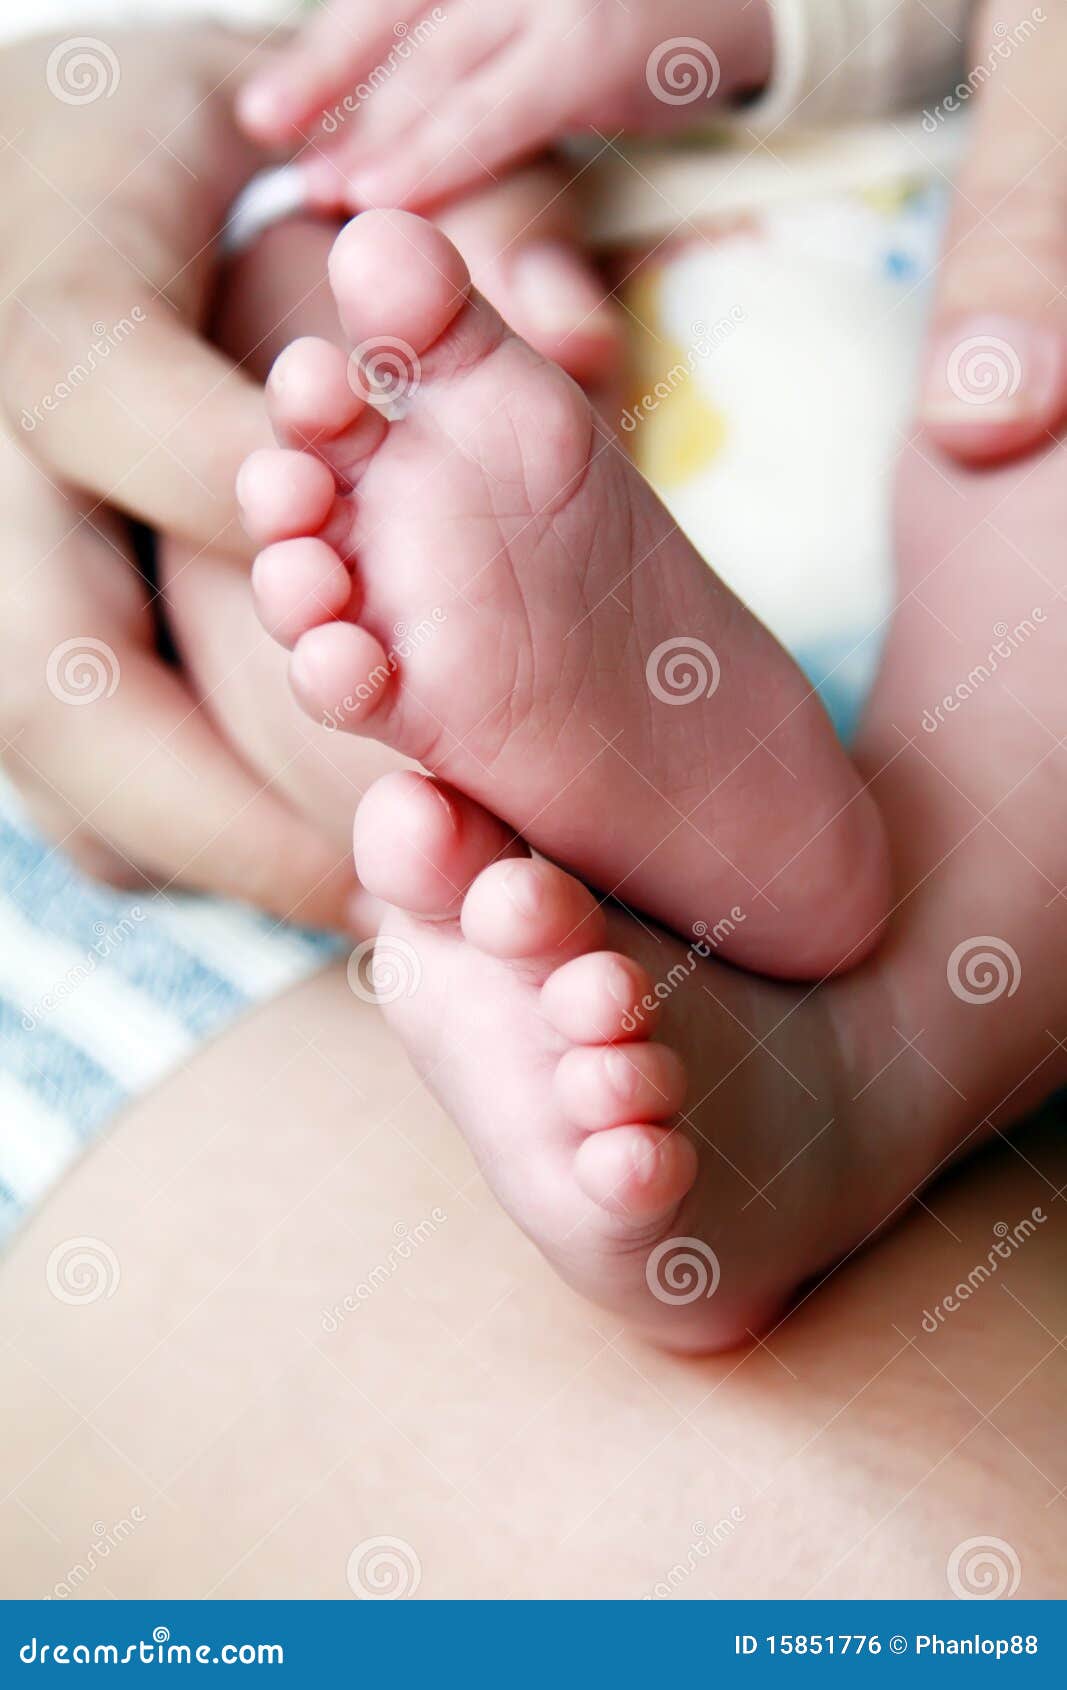 Целую ноги мамы. Ножки малыша. Красивые ножки малыши. Ножки новорожденного ребенка. Ступни младенца.